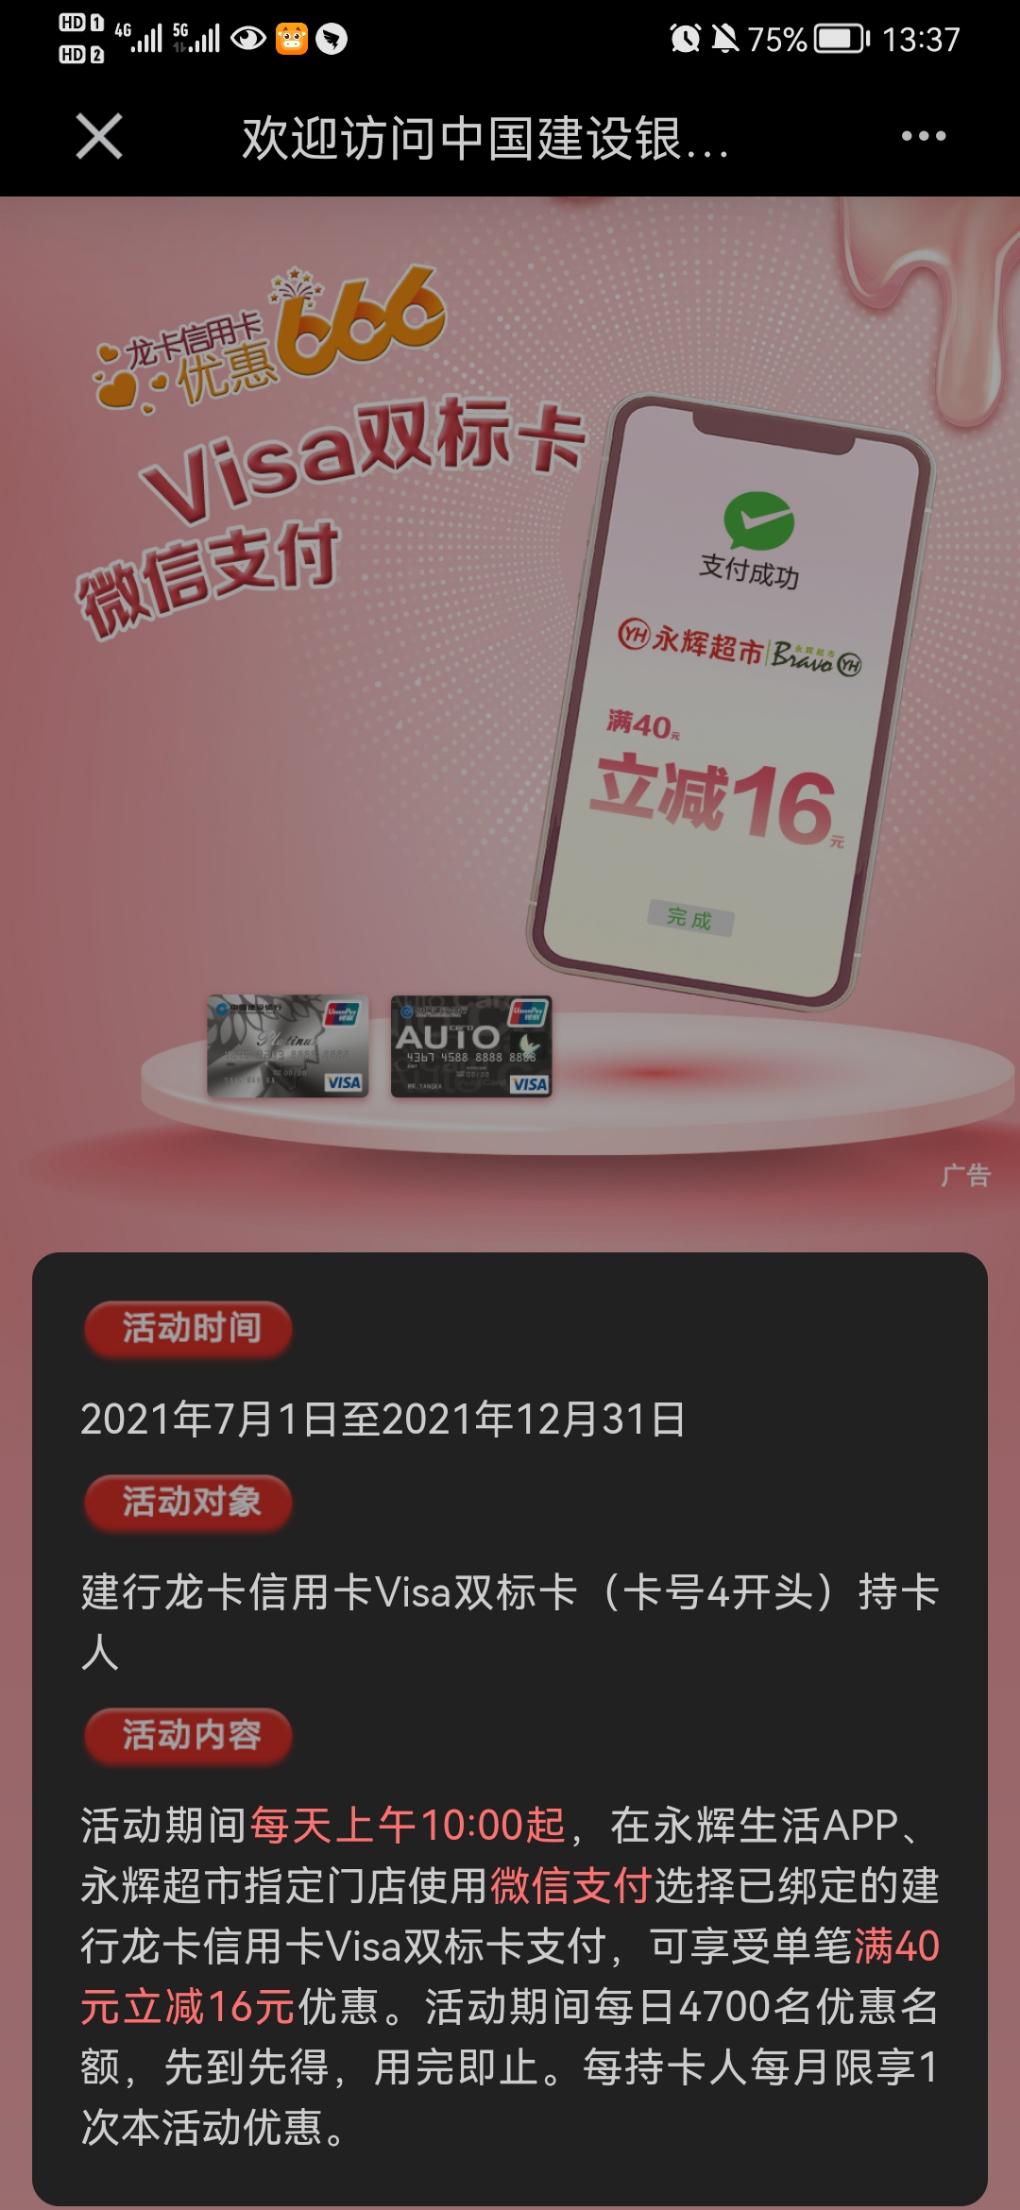 永辉建行visa双标卡40-16-可直接充值-惠小助(52huixz.com)